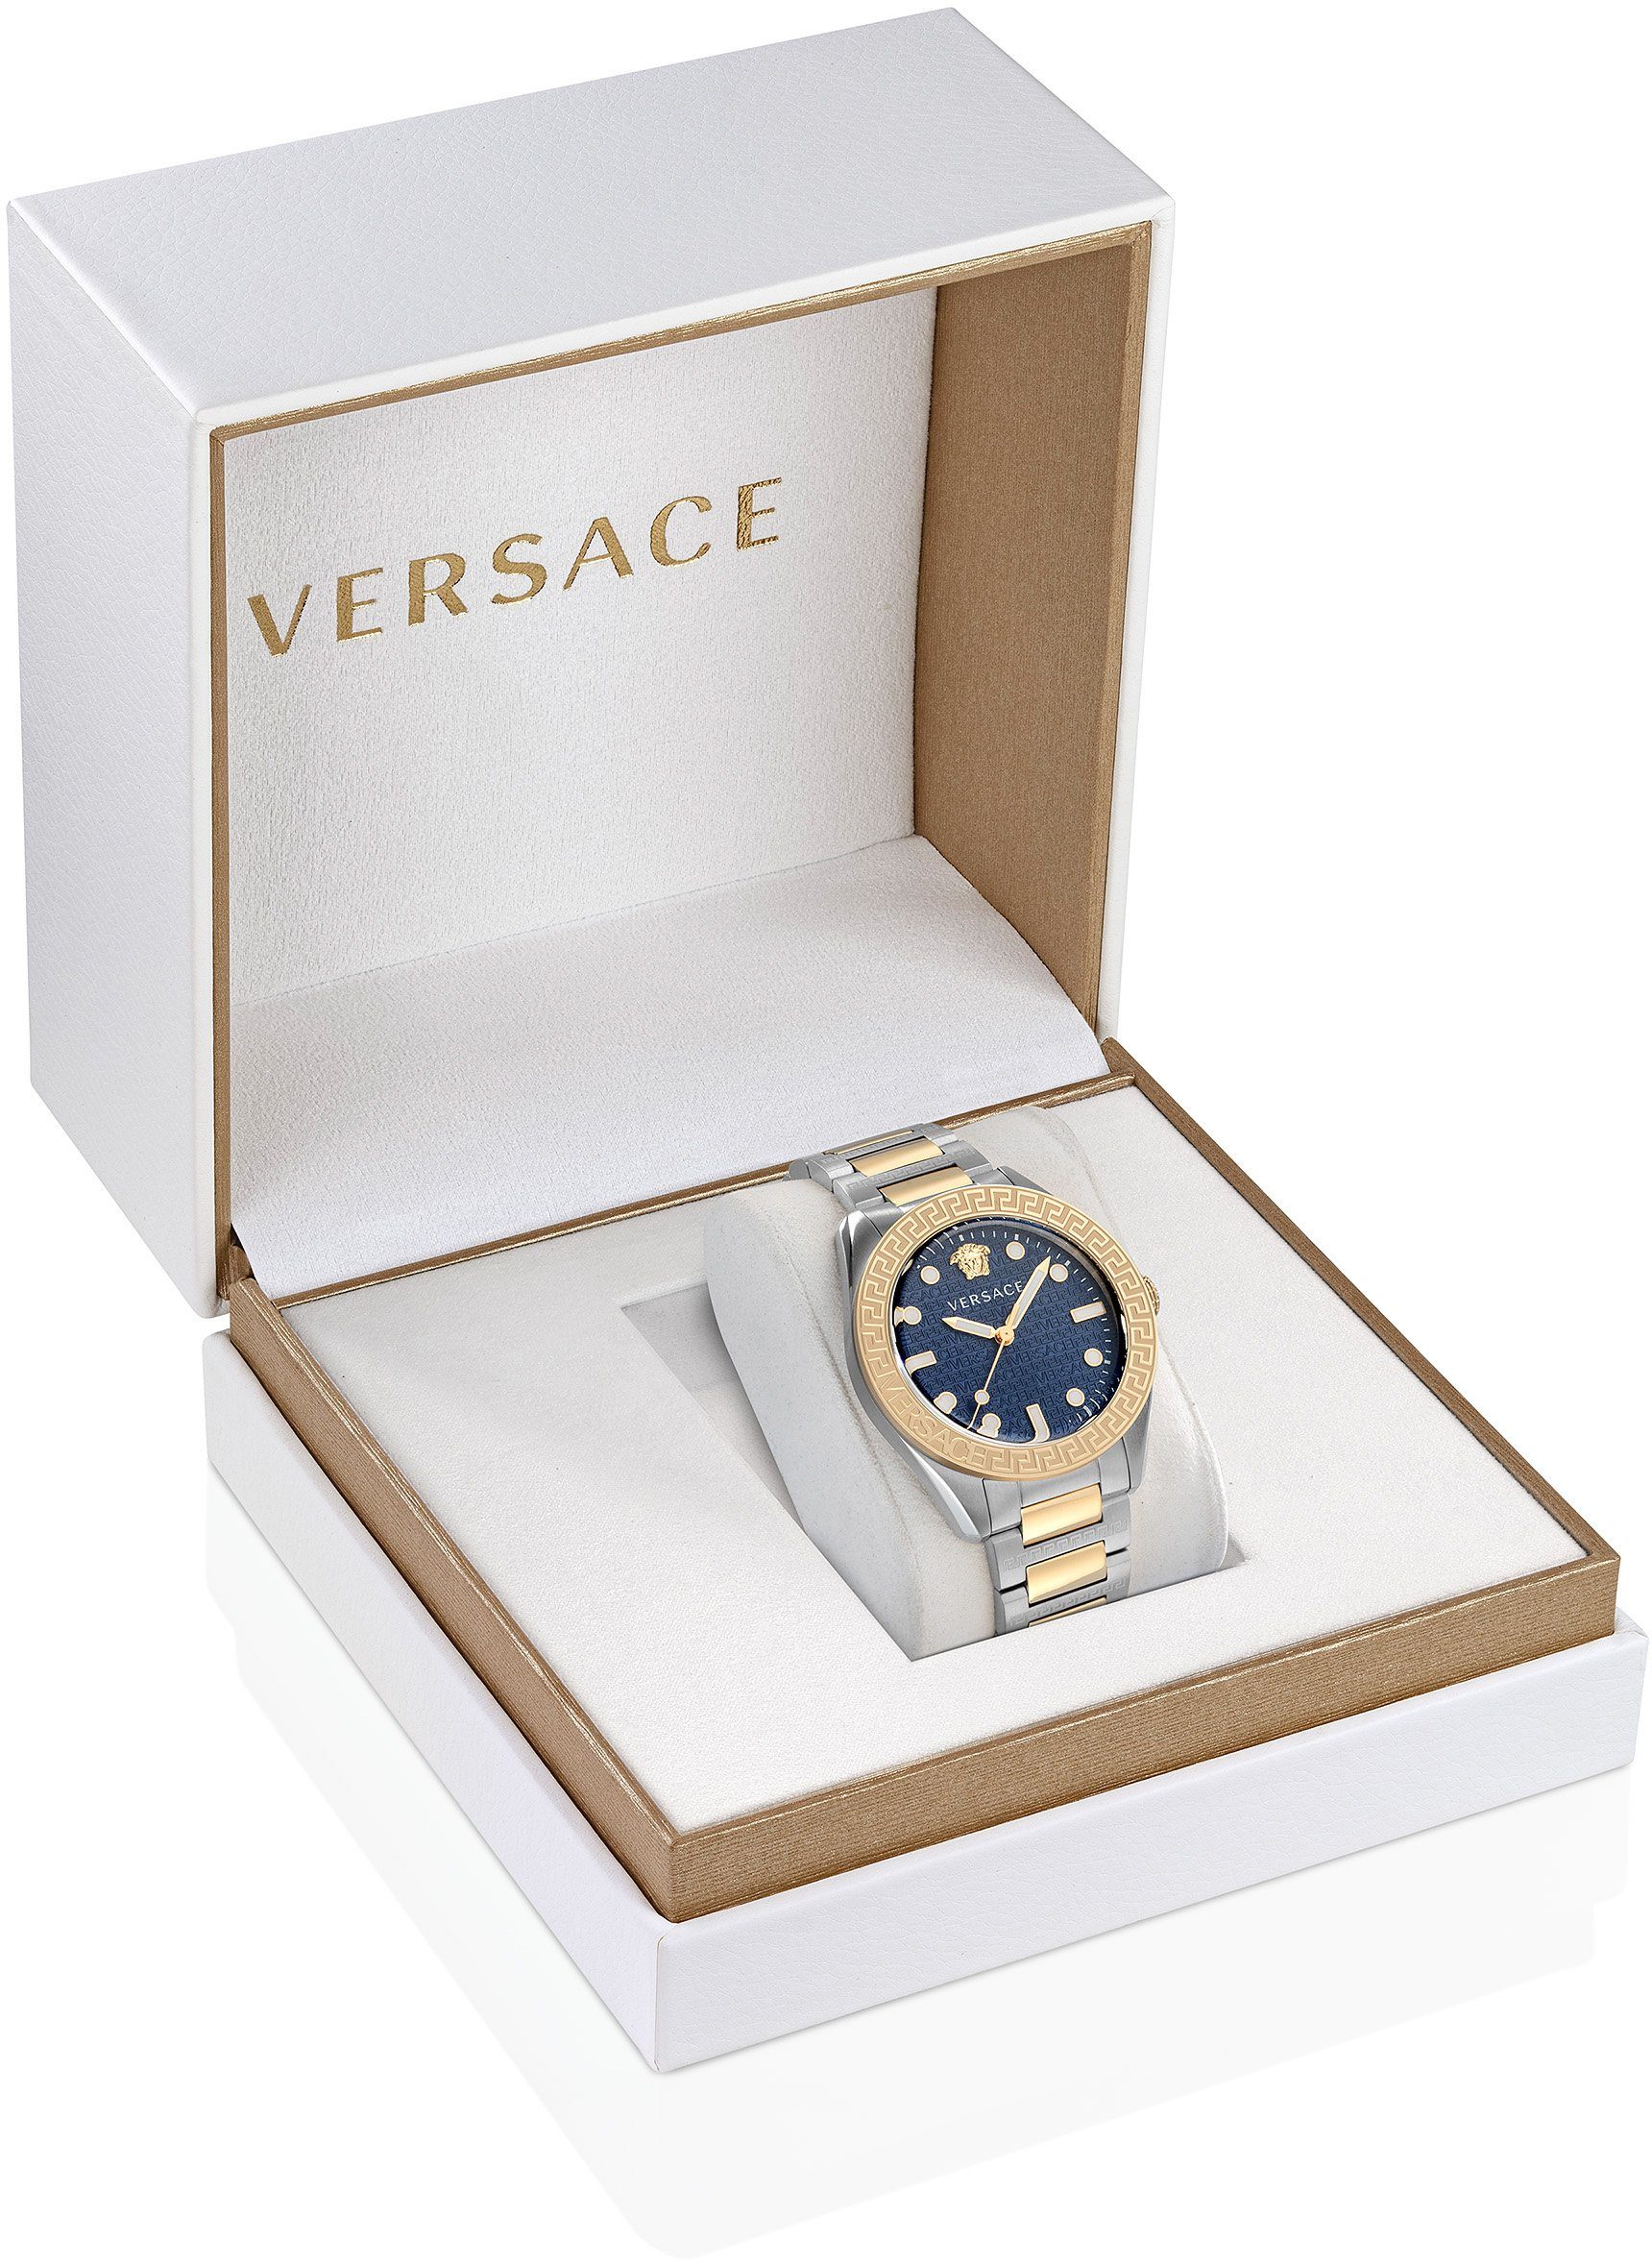 Versace VE2T00422 GRECA Uhr DOME, Schweizer